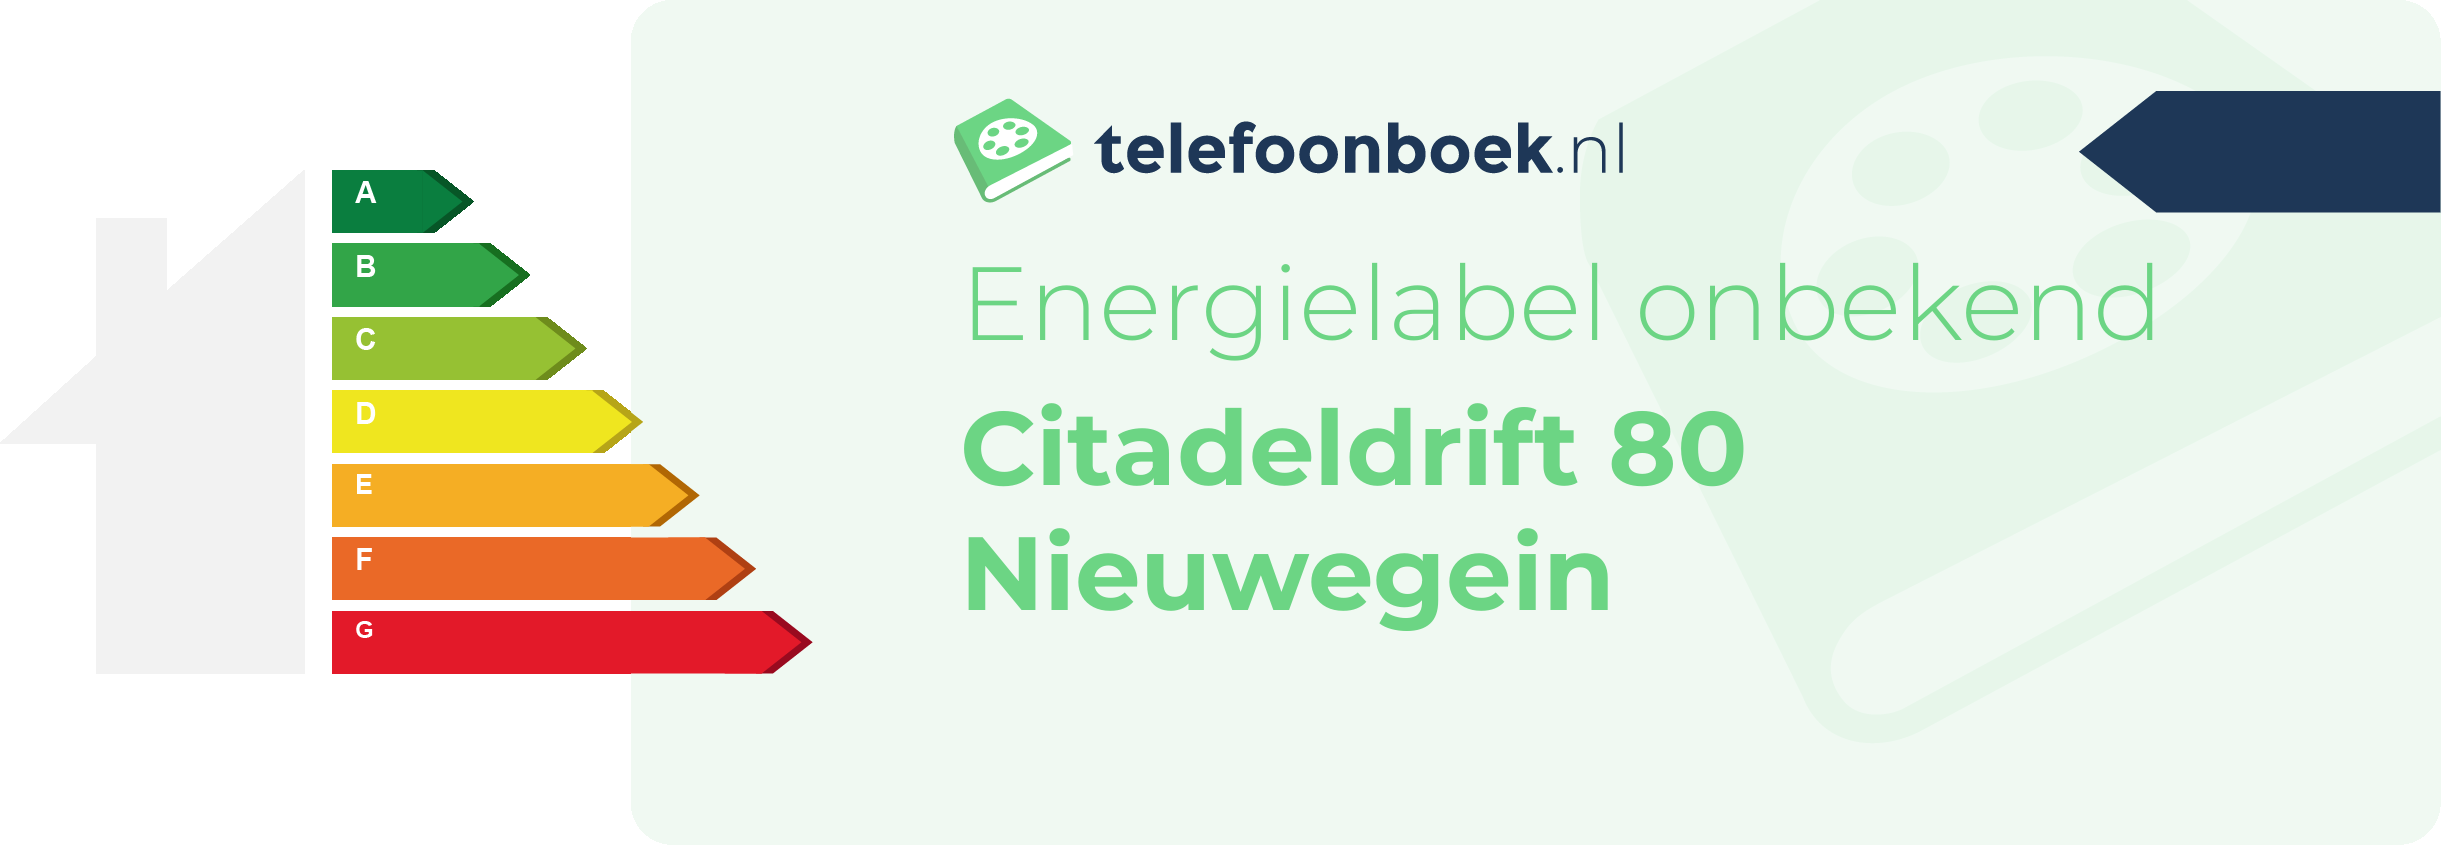 Energielabel Citadeldrift 80 Nieuwegein